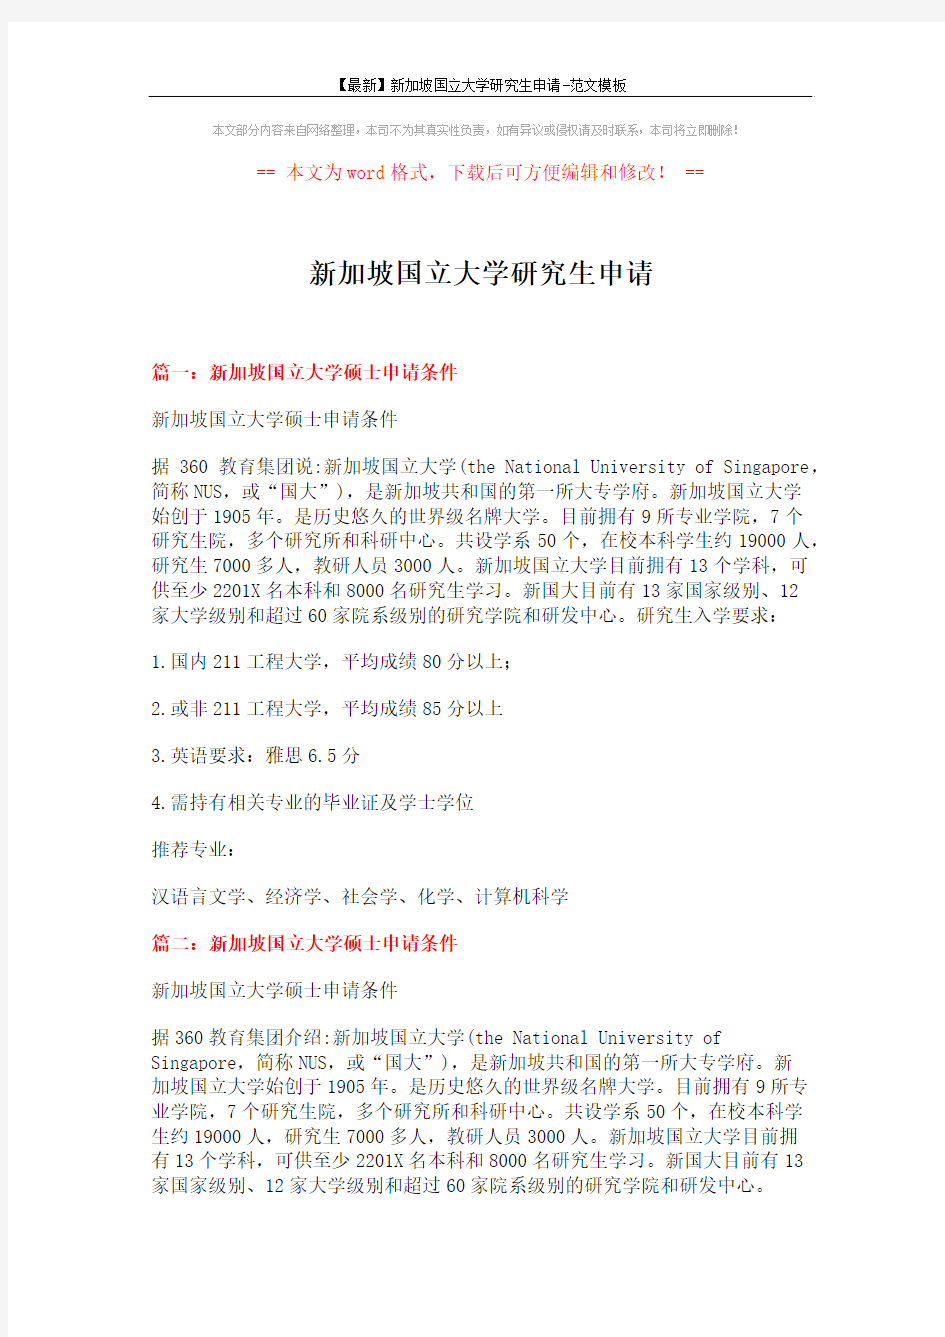 【最新】新加坡国立大学研究生申请-范文模板 (4页)